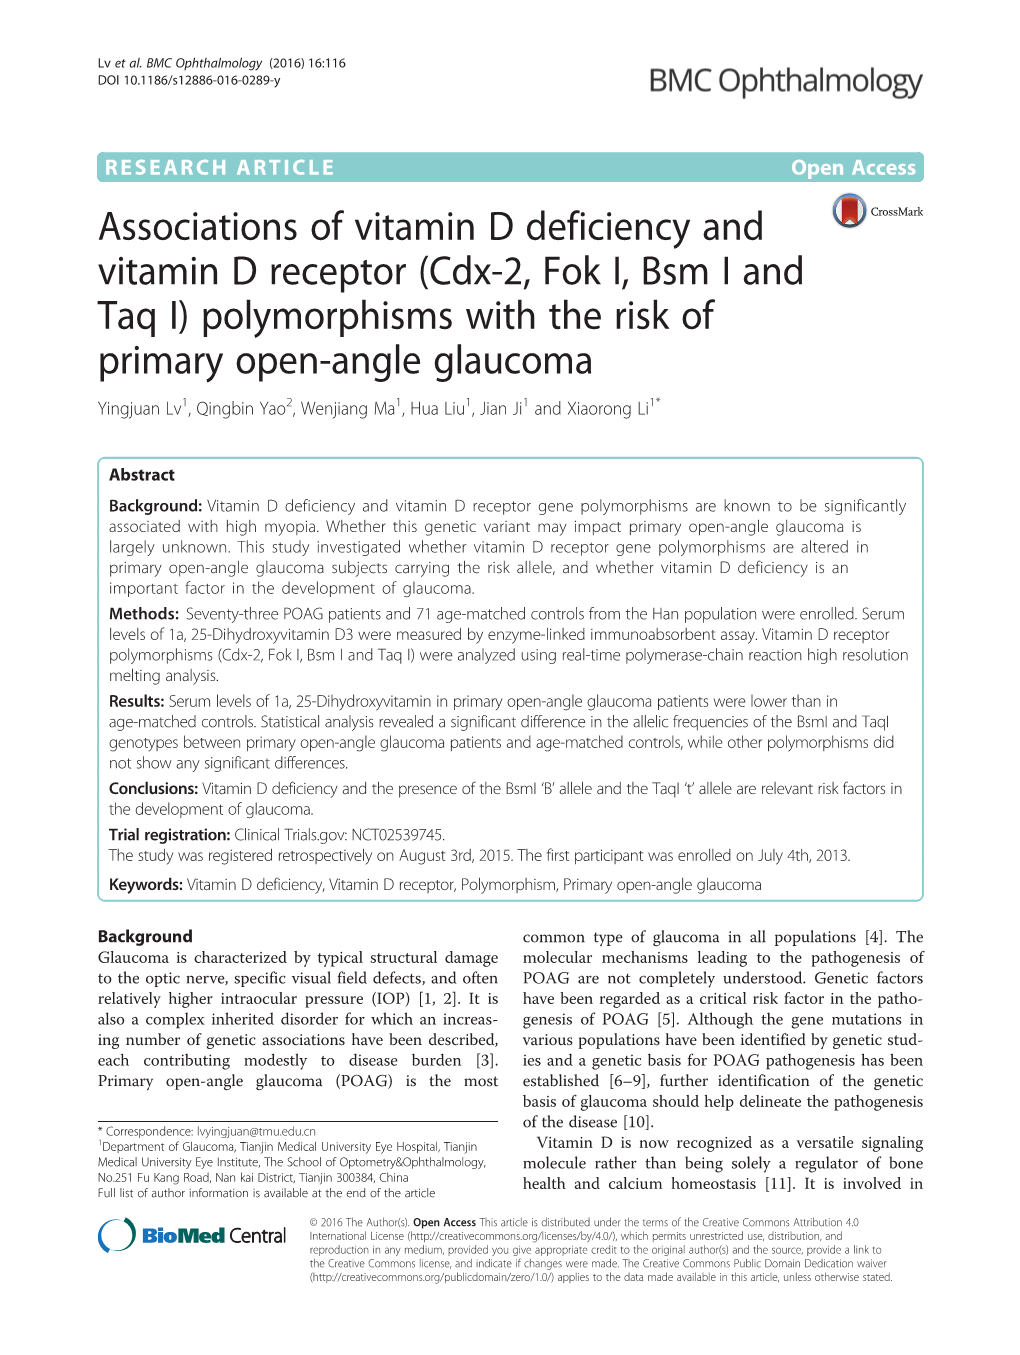 Associations of Vitamin D Deficiency and Vitamin D Receptor (Cdx-2, Fok I